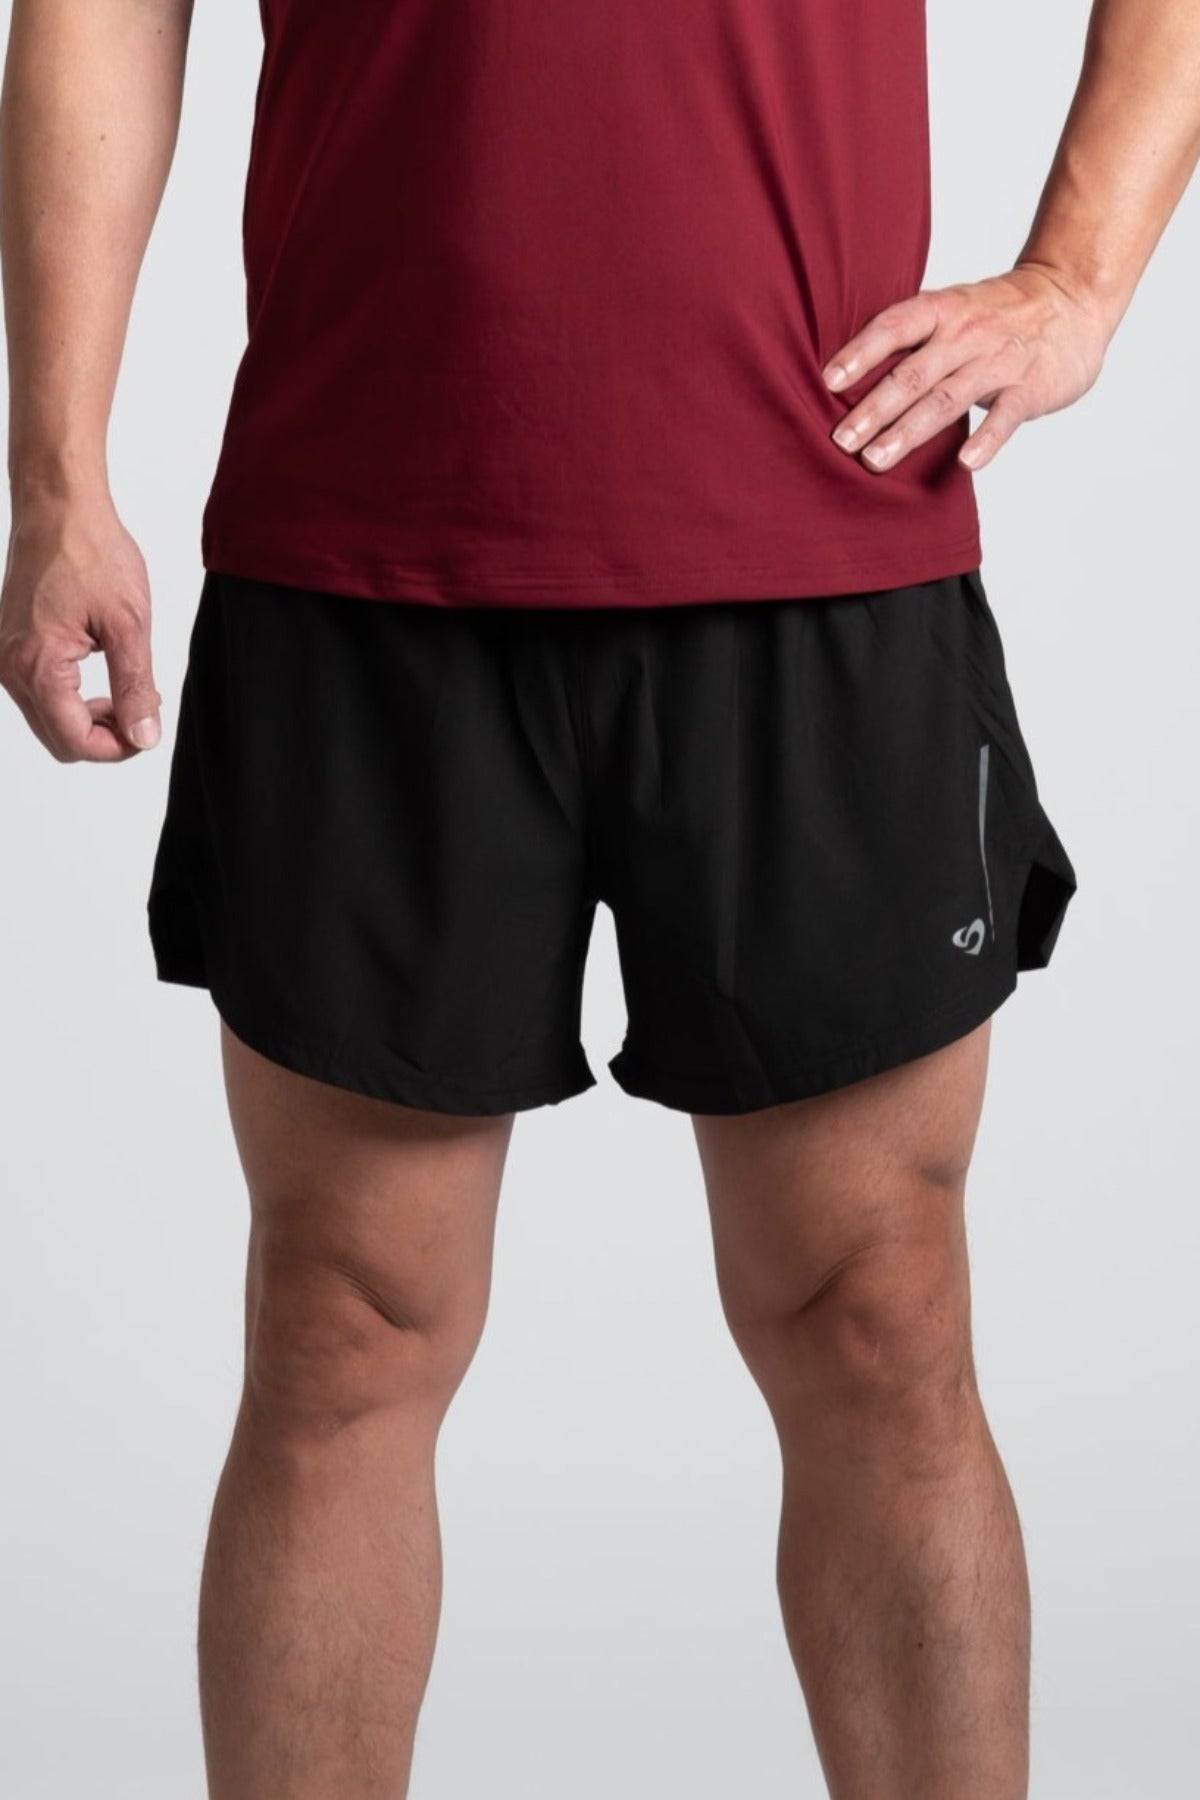 Men's black running shorts, back zip pocket